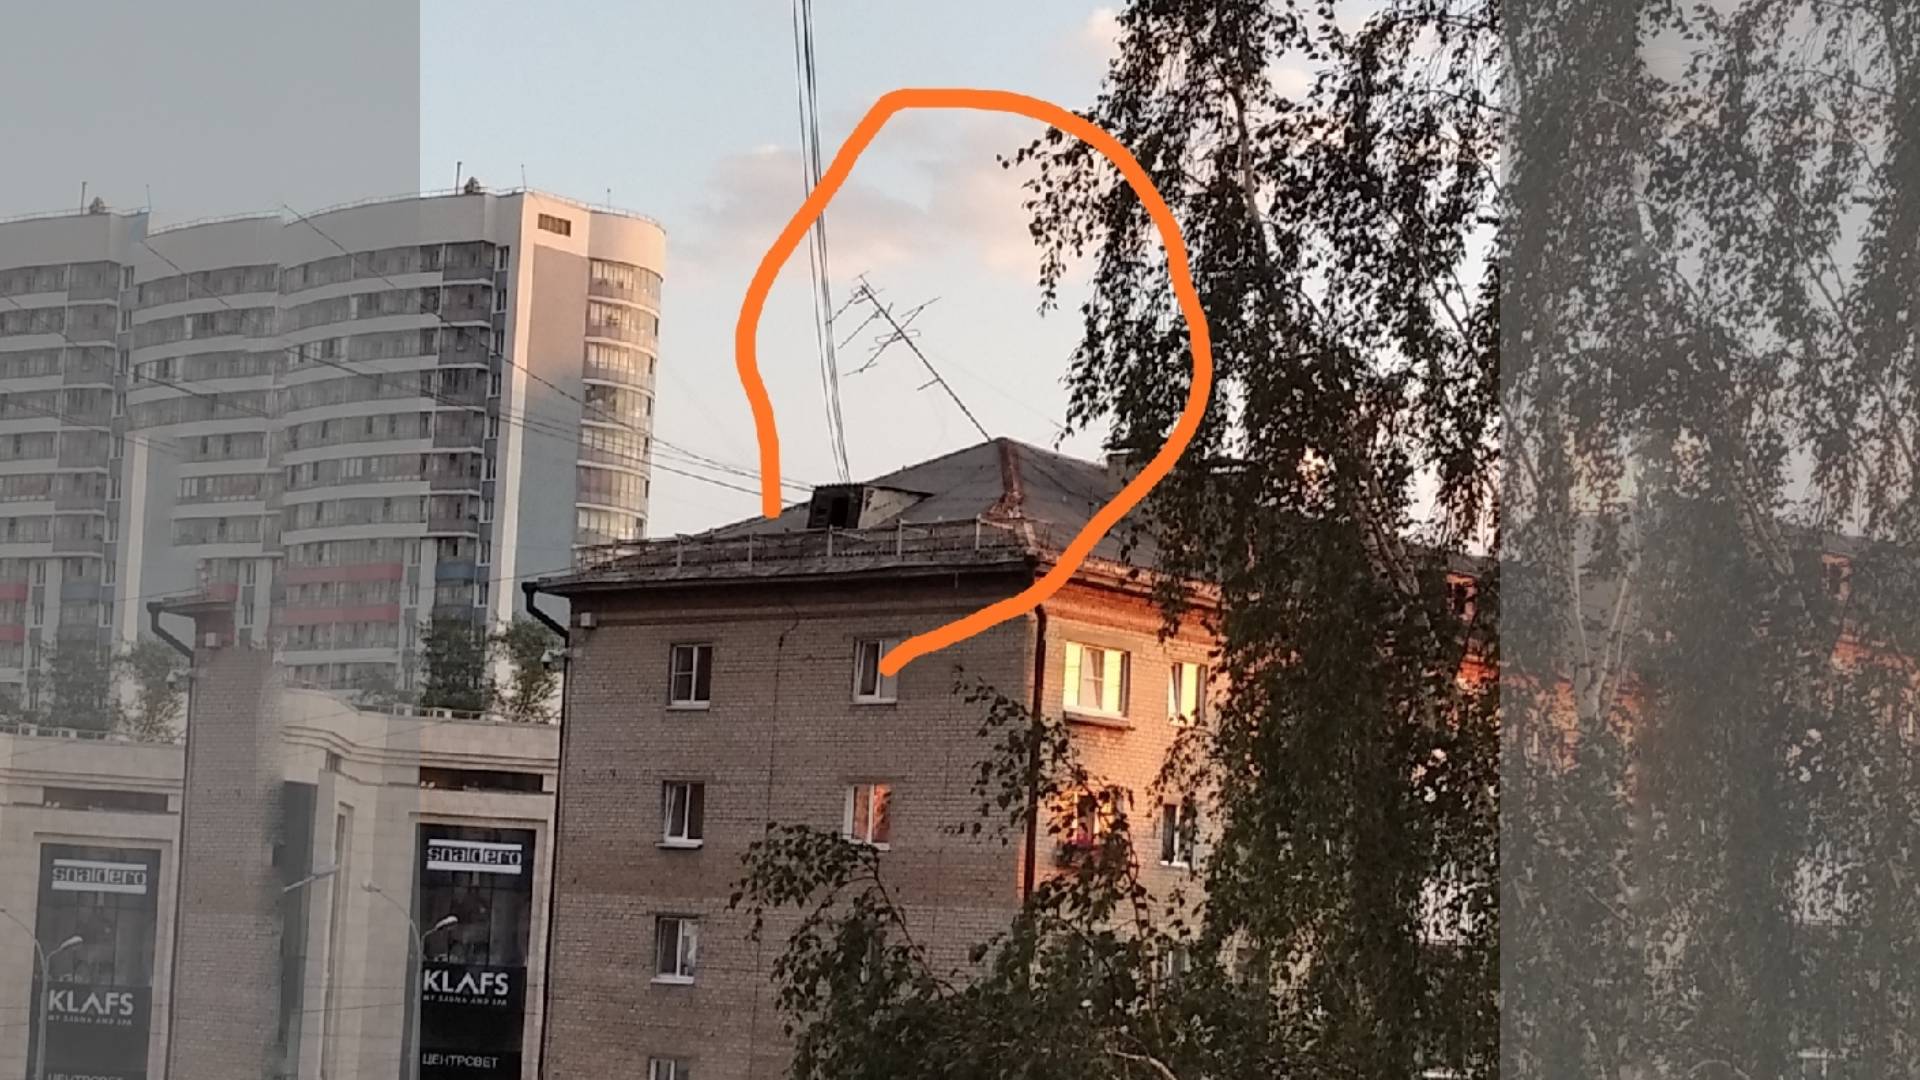 Опасно висящая антенна, Екатеринбург